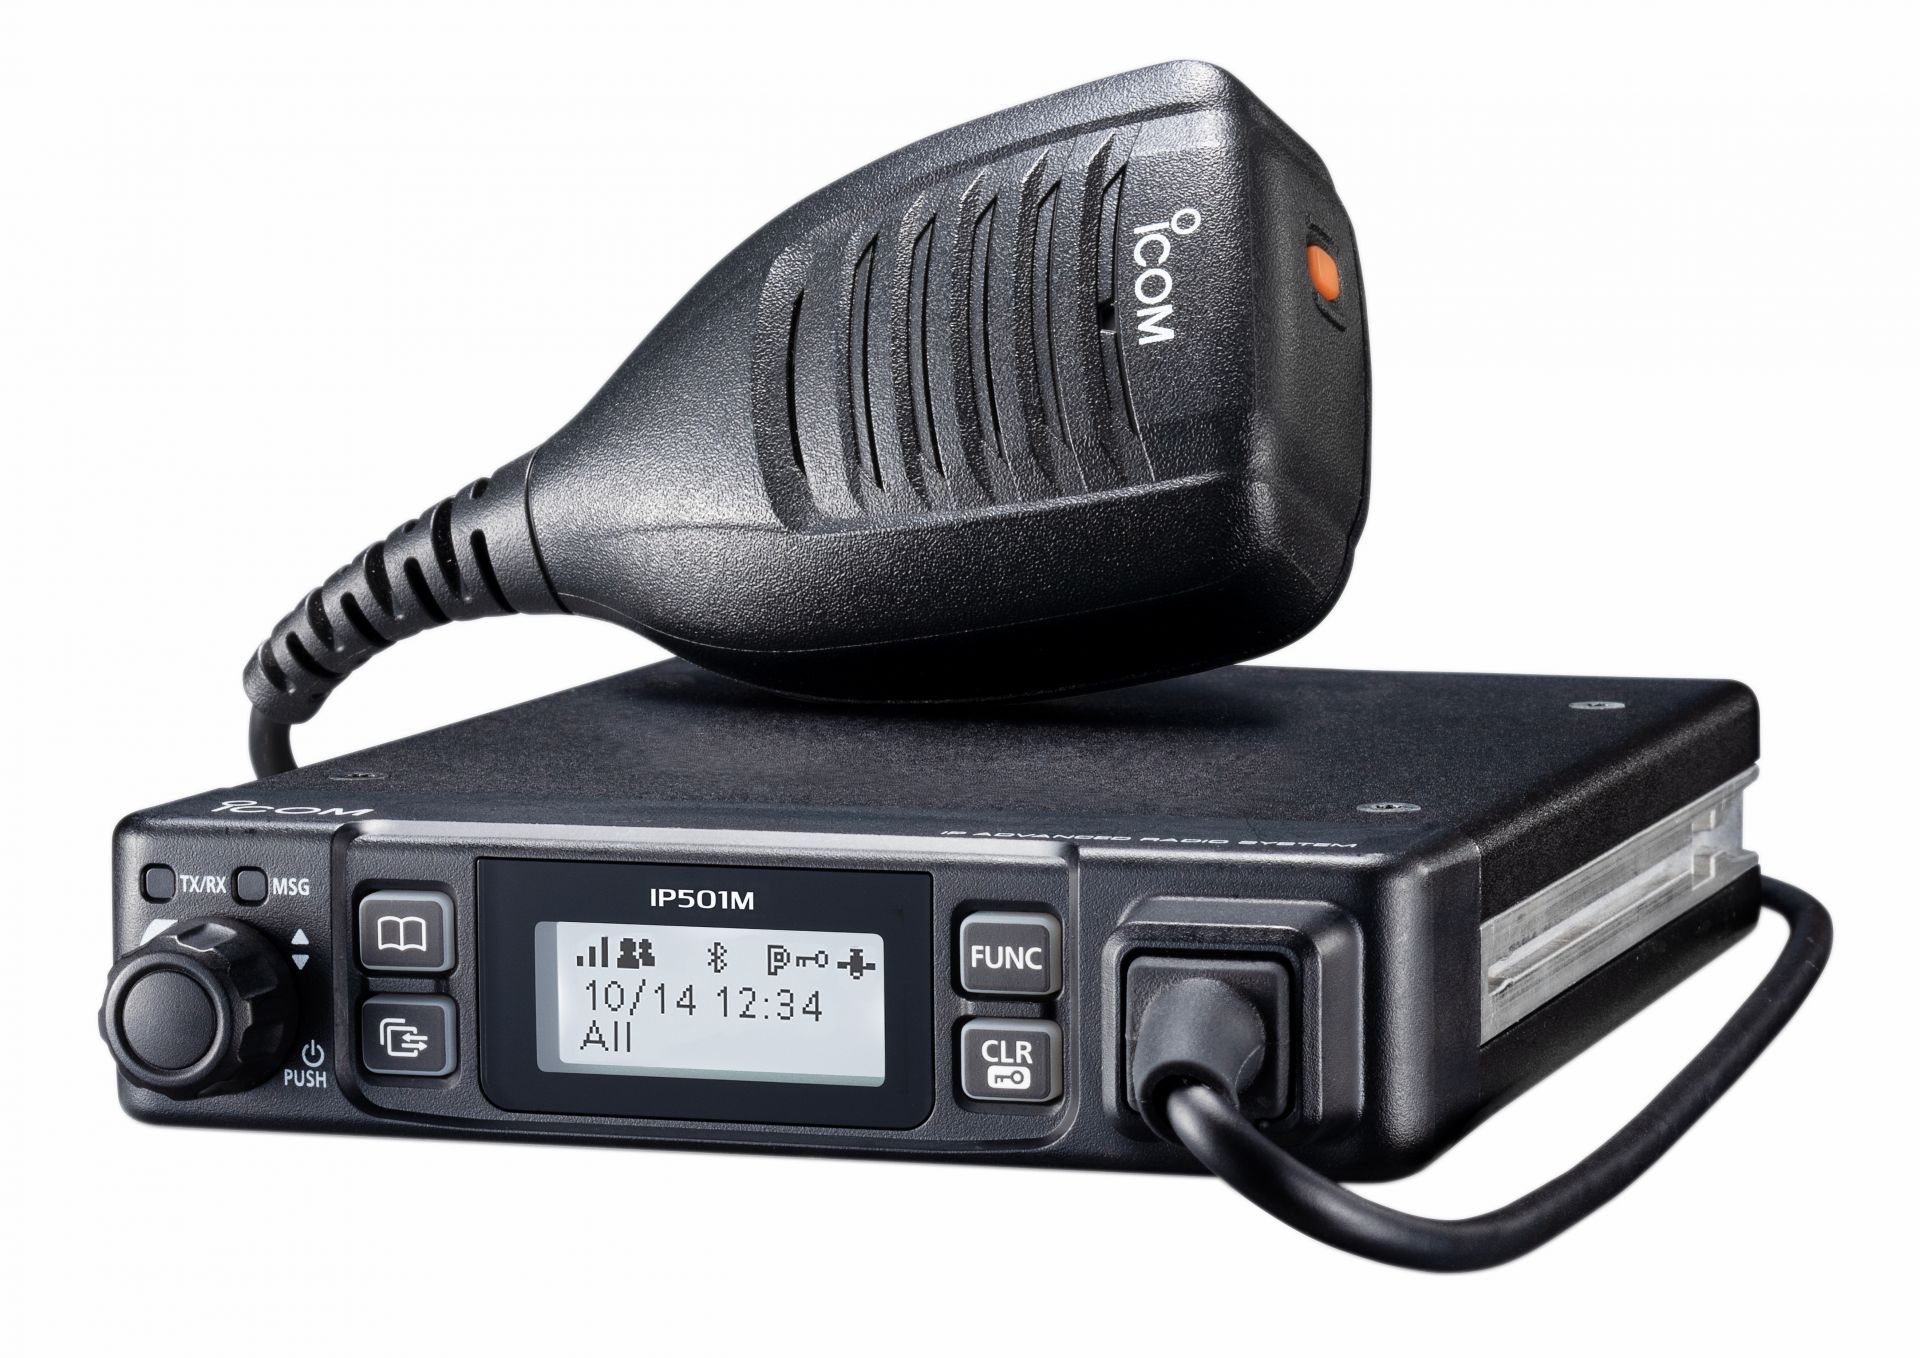 Mobile radio lte ptt sur reseaux lte (4g)/3g innovant ip501m_0